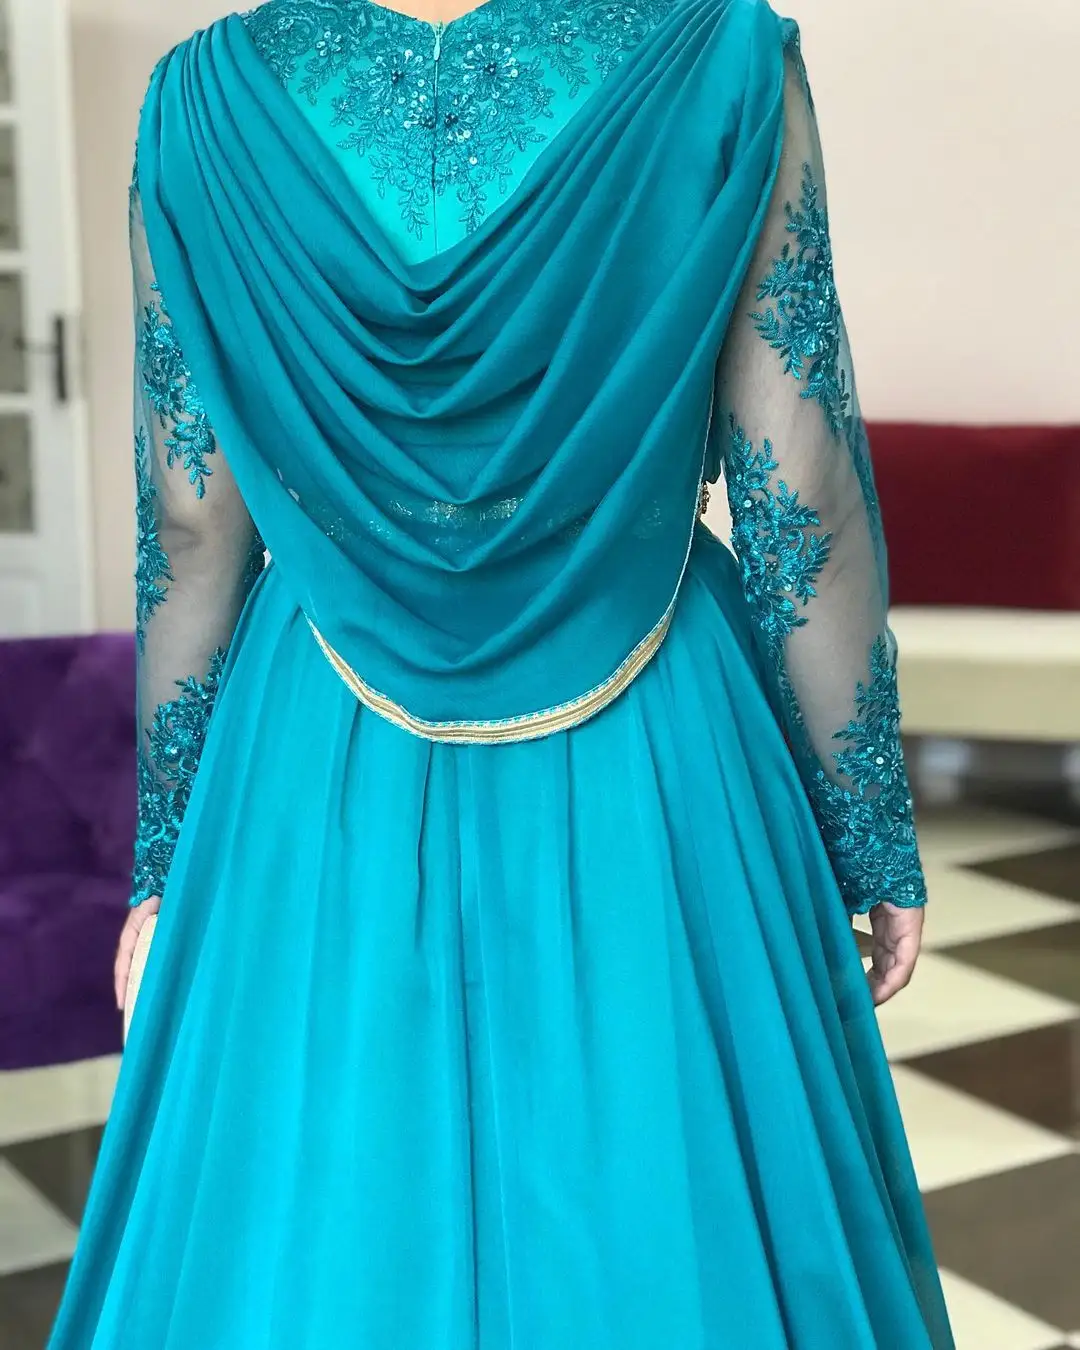 Abito tradizionale in stile marocchino blu cielo spesso indossato da spose algeria, composto da un abito interno ed esterno.